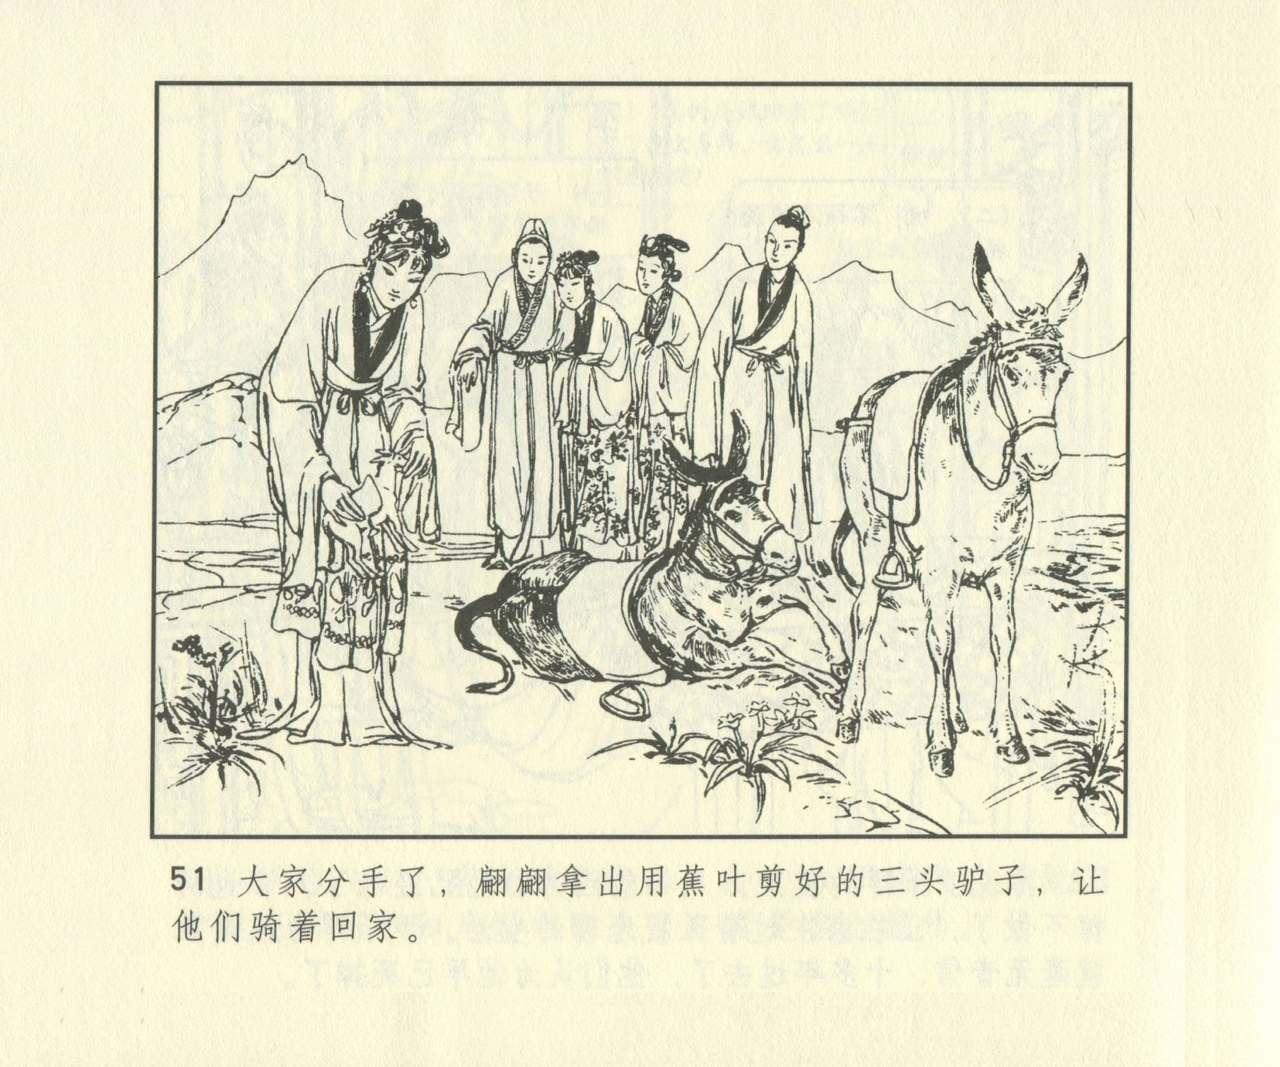 聊斋志异 张玮等绘 天津人民美术出版社 卷二十一 ~ 三十 667